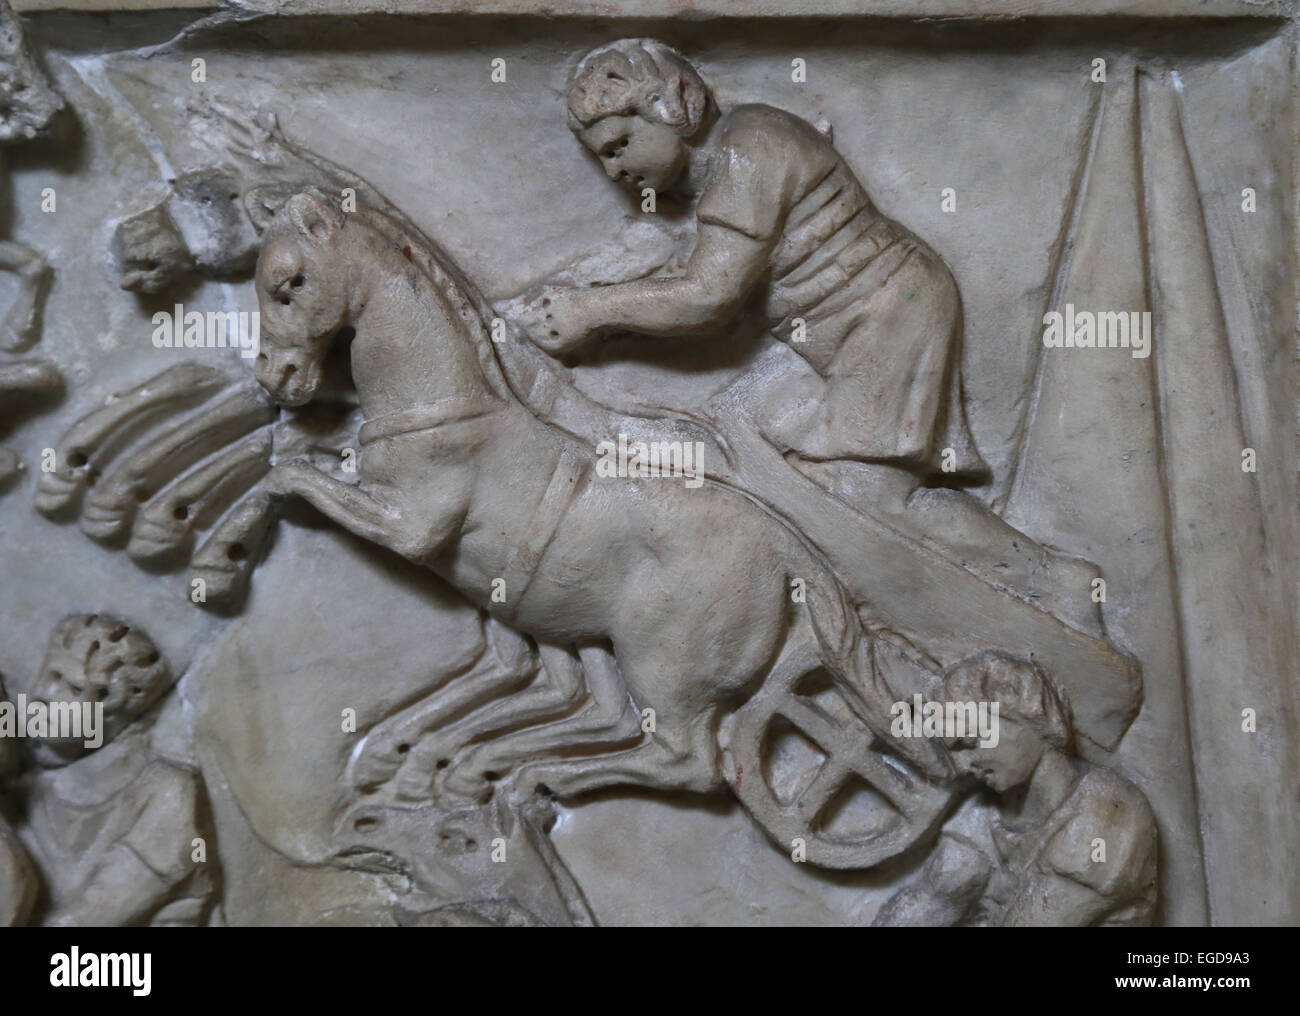 Le soulagement. Course de chars dans le Circus Maximus, Rome, 3e ch. AD. Détail. Rome, Musée du Vatican (52043). Banque D'Images